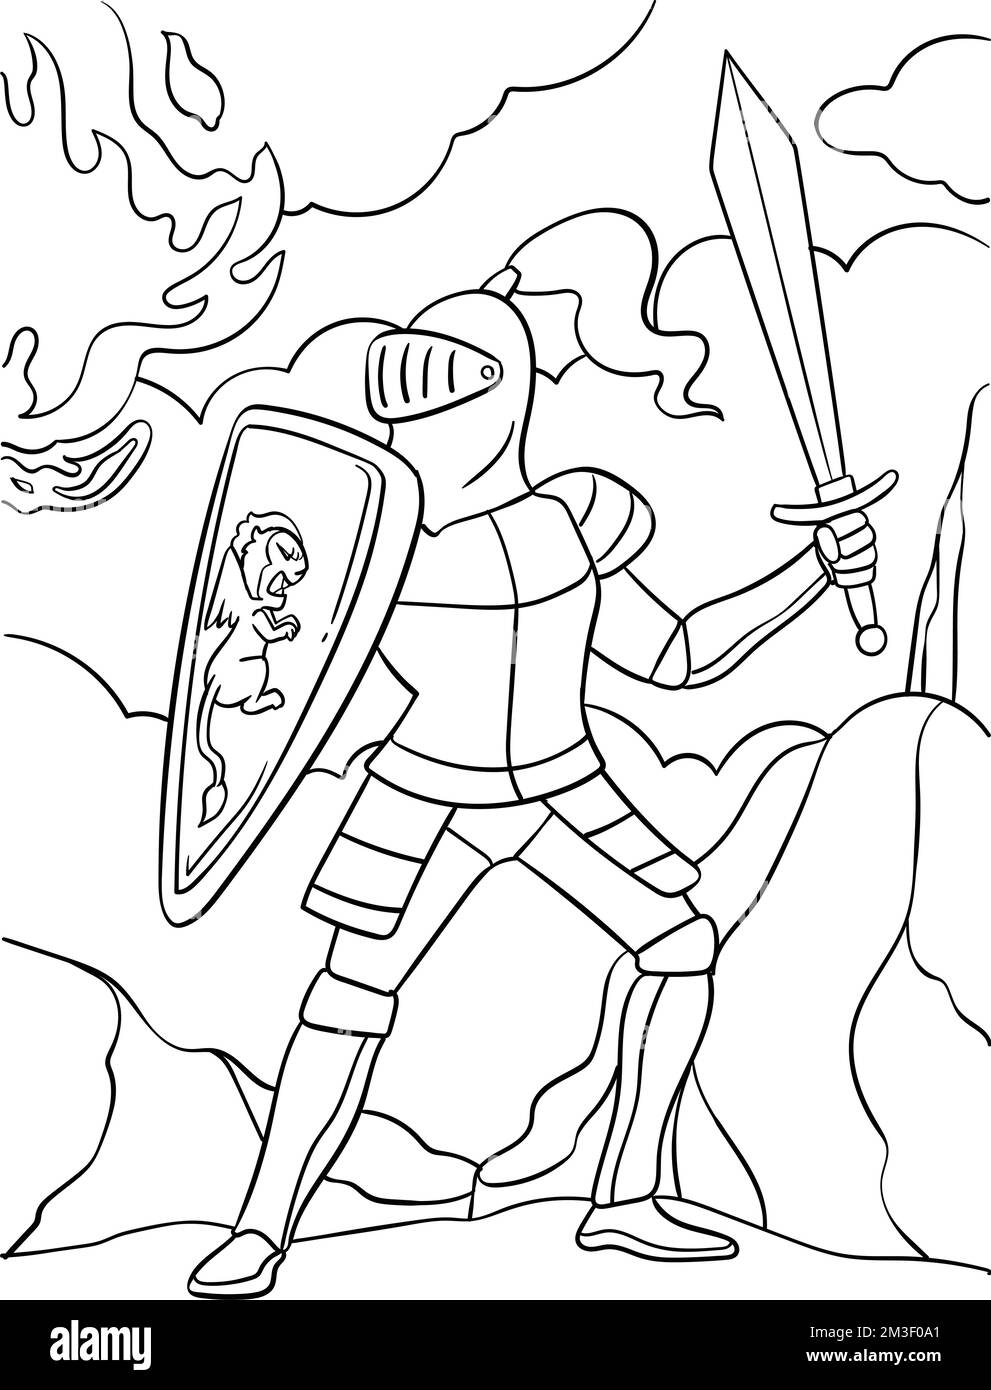 Knight dans une posture de combat coloriage page pour enfants Illustration de Vecteur